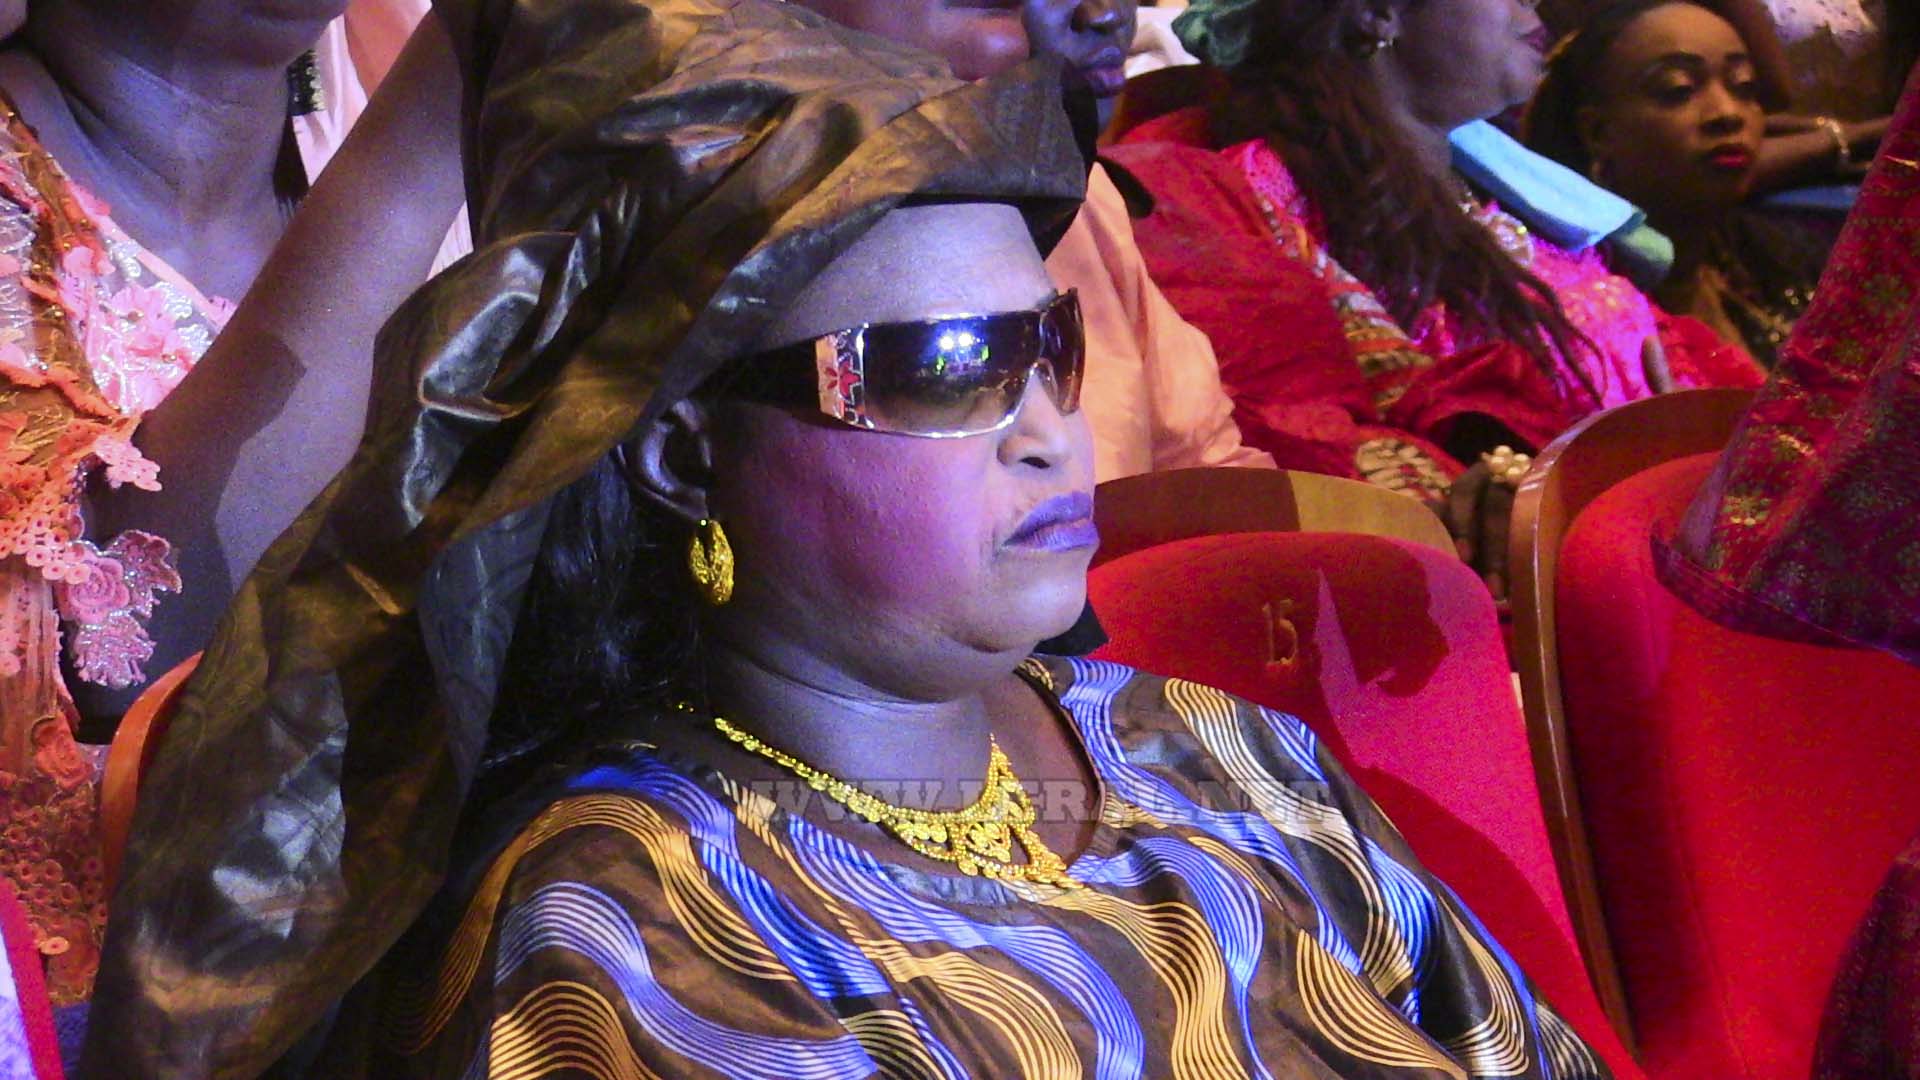 Photos: Revivez en images la soirée de Alassane Mbaye, le griot des VIP , au Grand Théâtre 